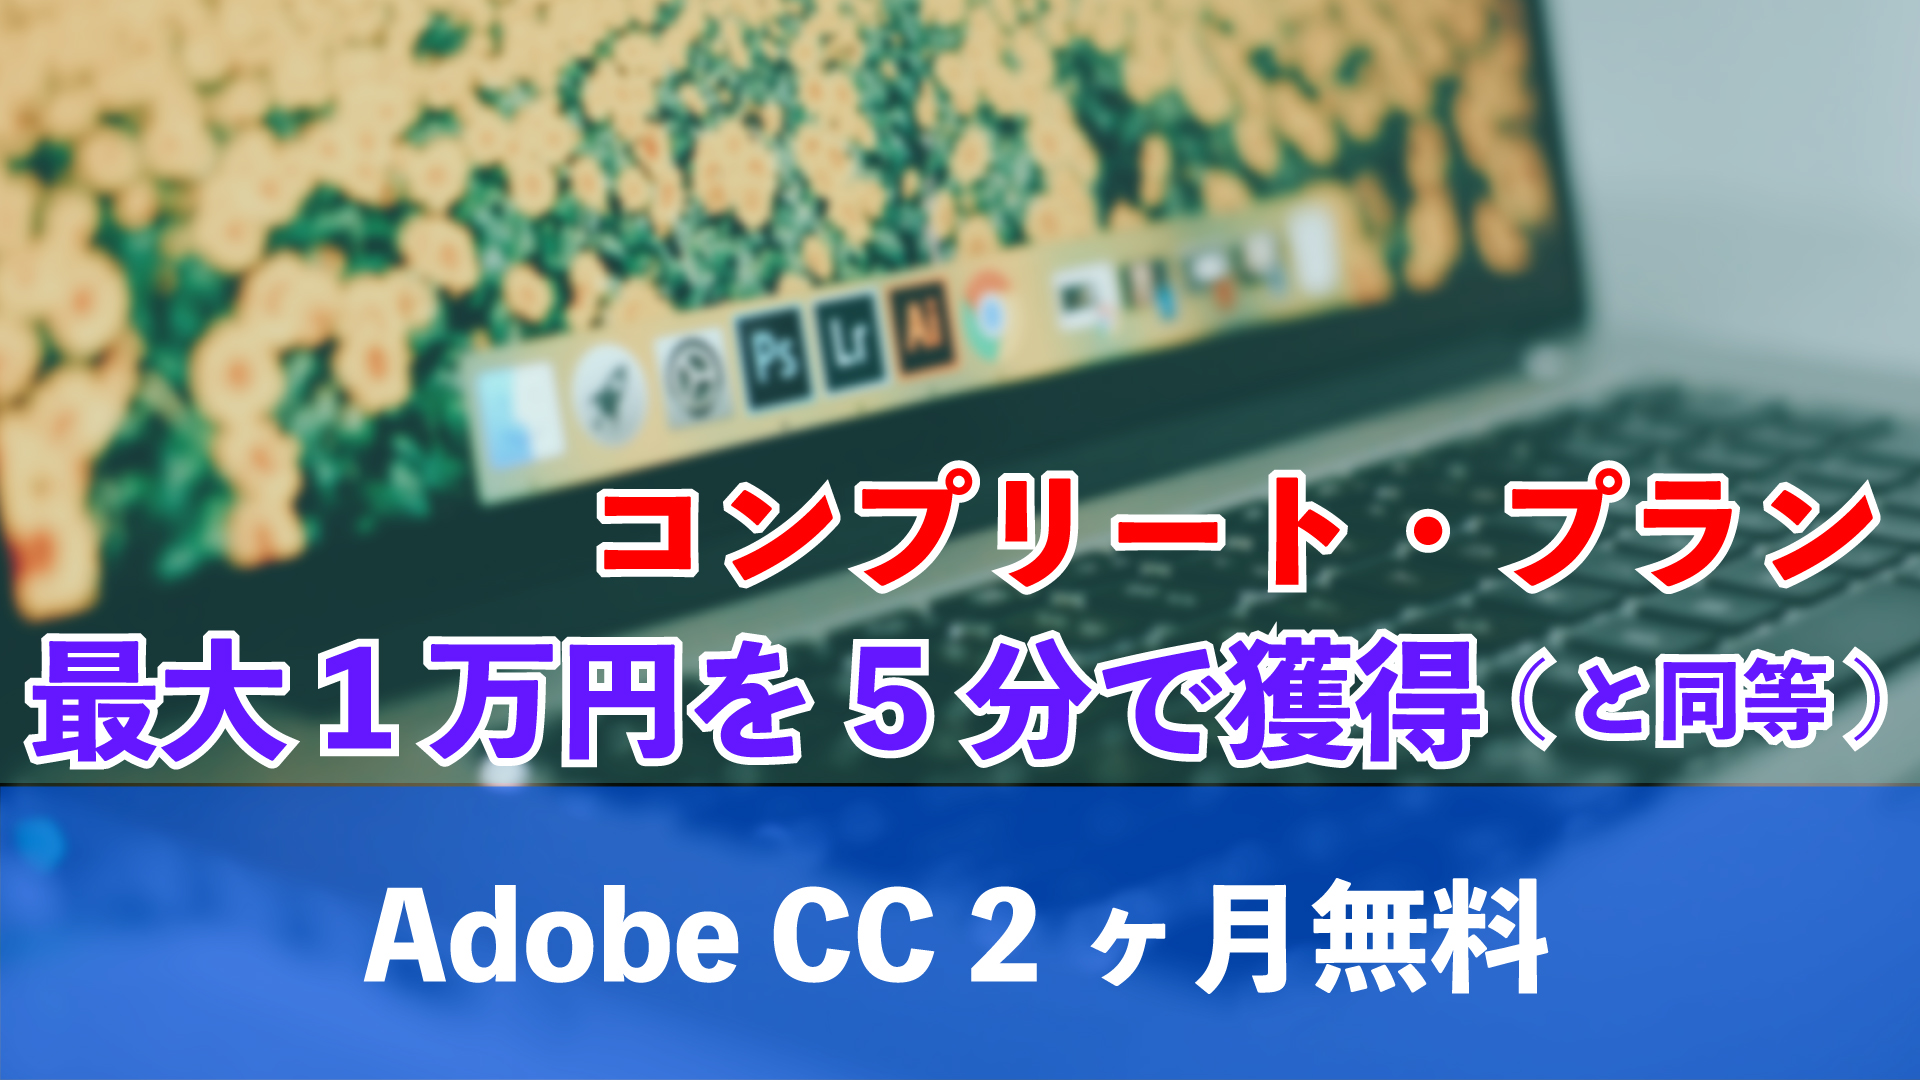 Adobe-2ヶ月無料-covid-19